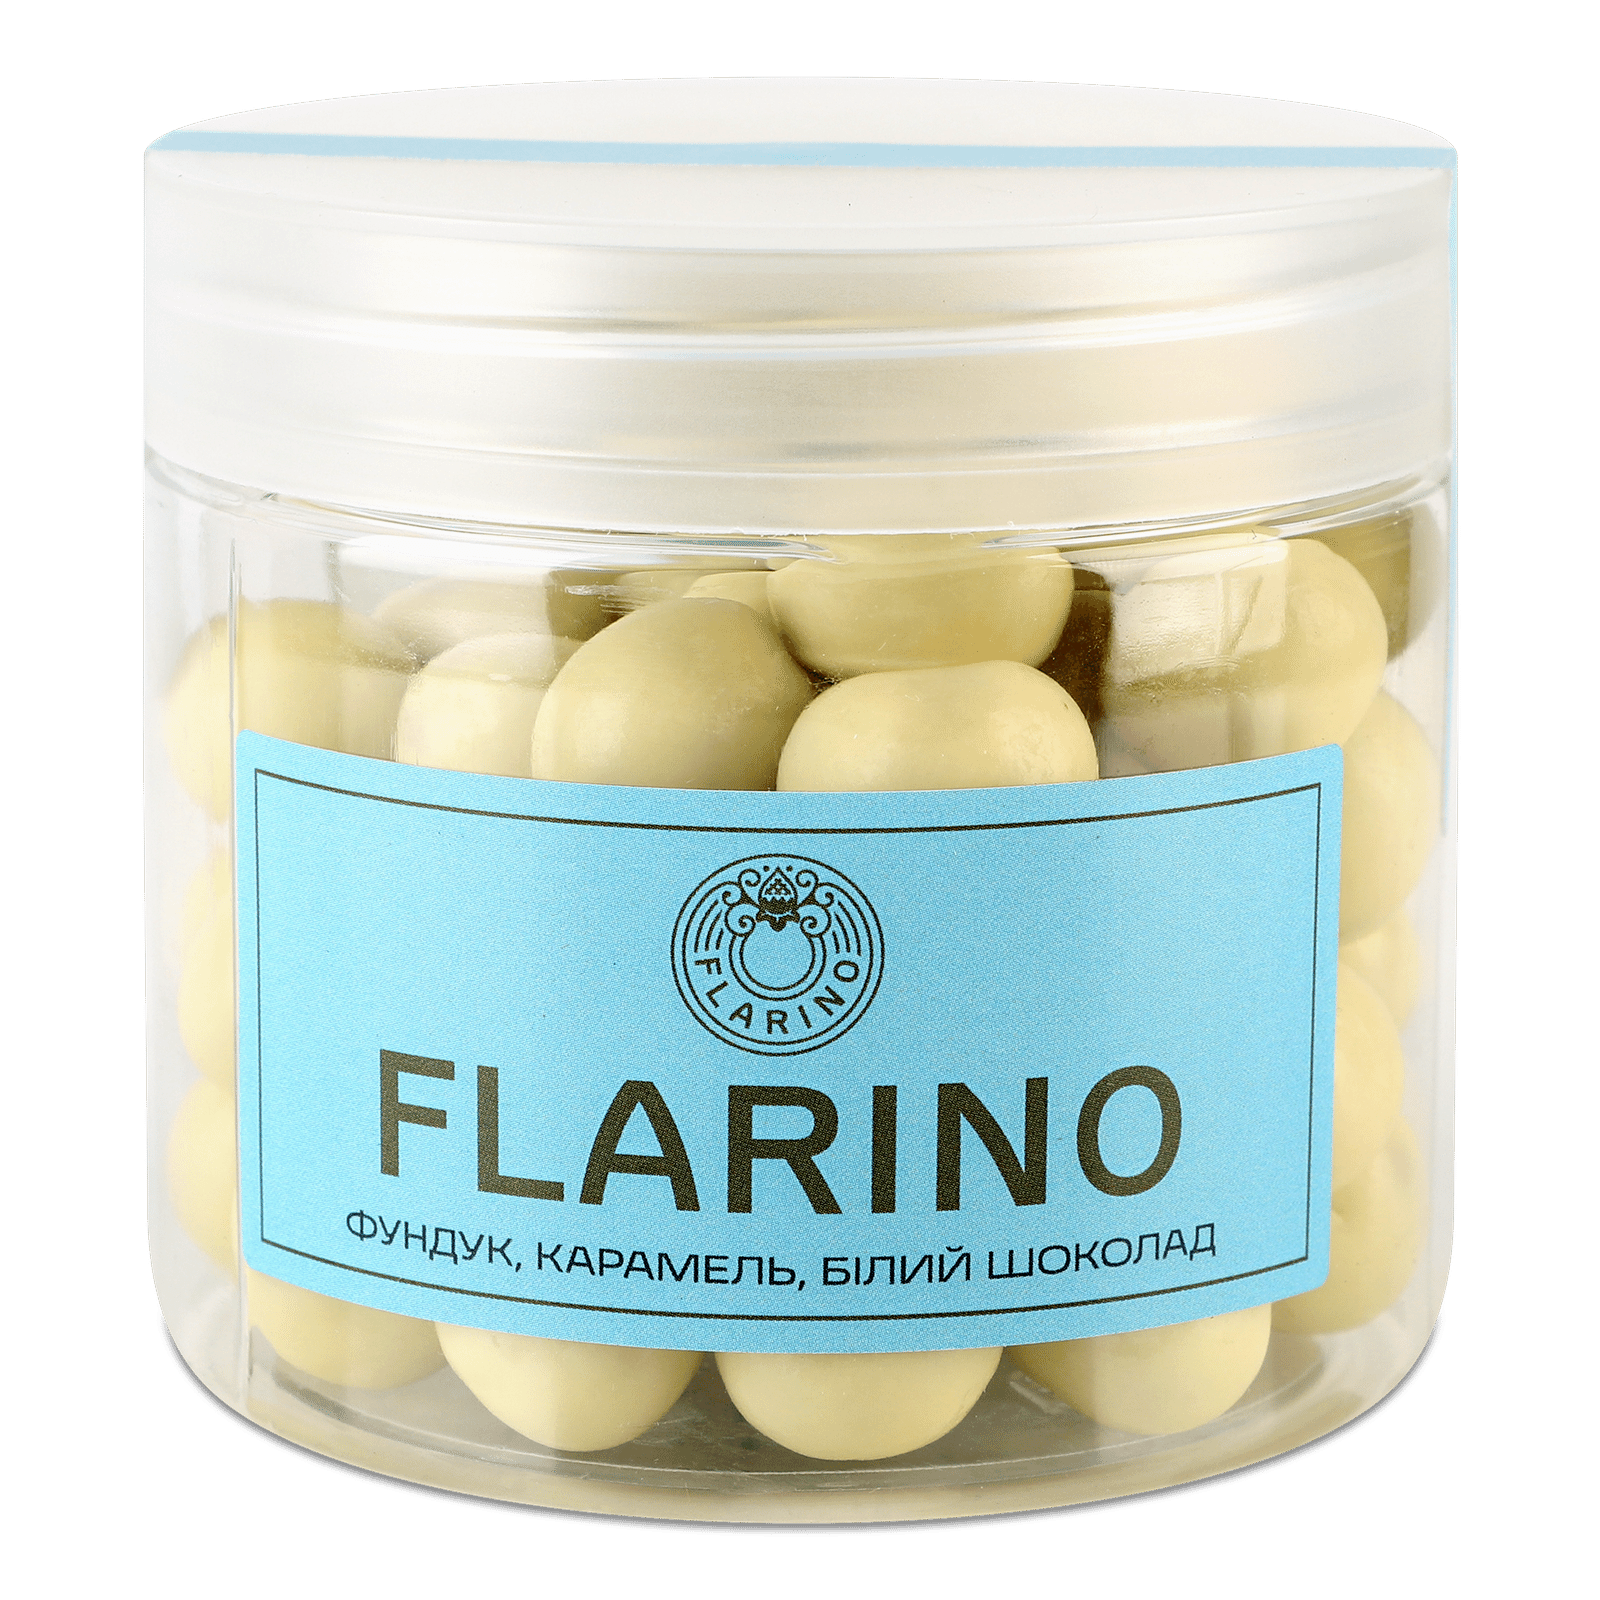 Фундук Flarino у карамелі та білому шоколаді - 1